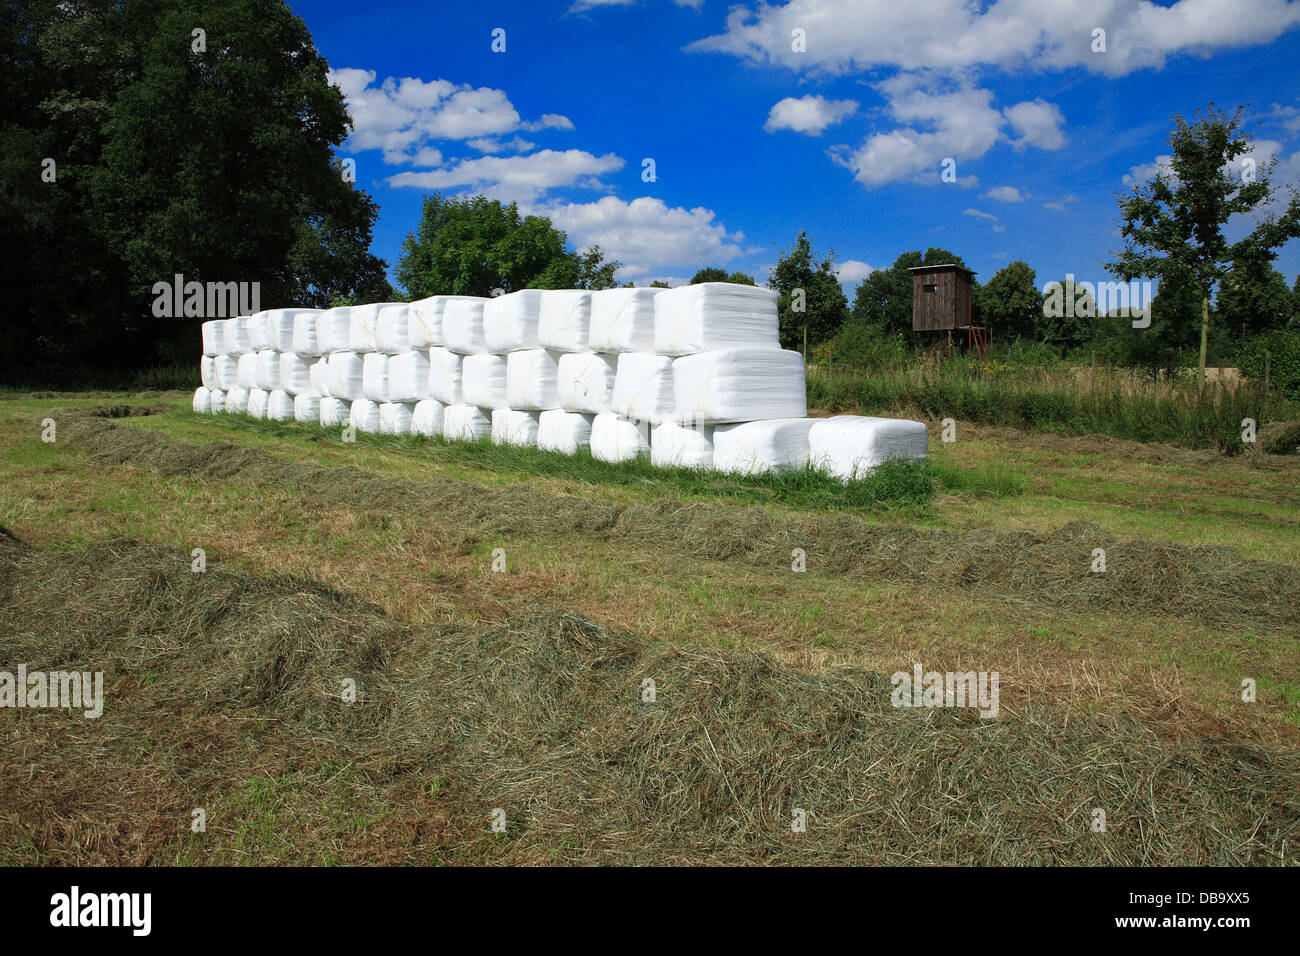 Des balles d'ensilage empilé sur une ferme de l'Allemagne, l'Europe Banque D'Images